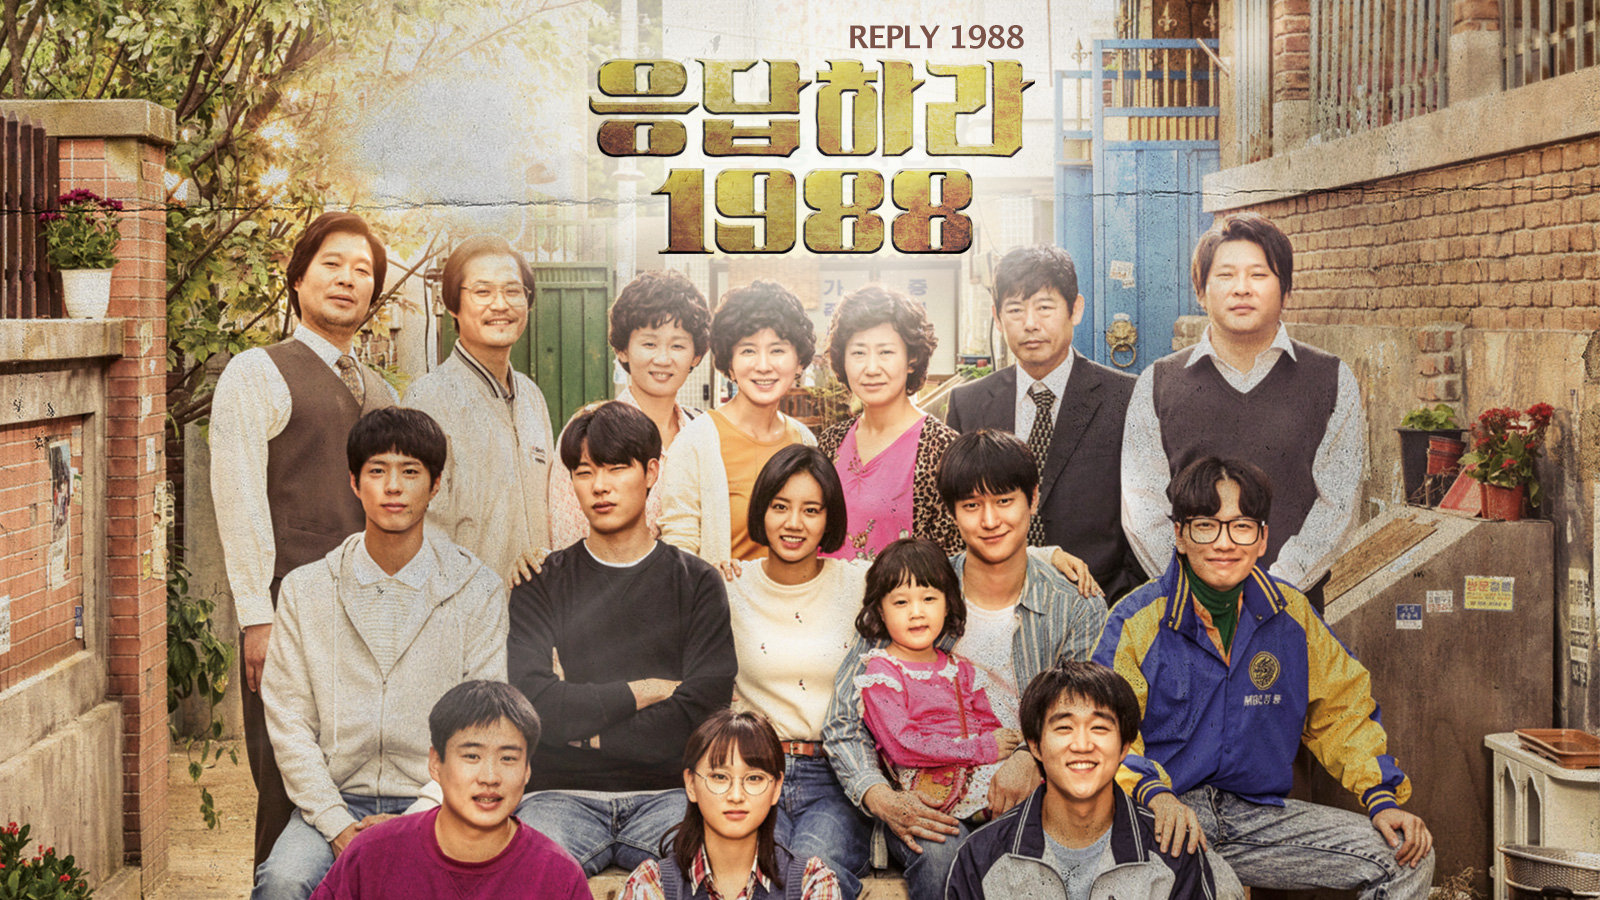 'Reply 1988' kể về hành trình tuổi thanh xuân của những cô bé, cậu bé nghèo ở khu phố Ssangmun-Dong, Seoul những năm 80.